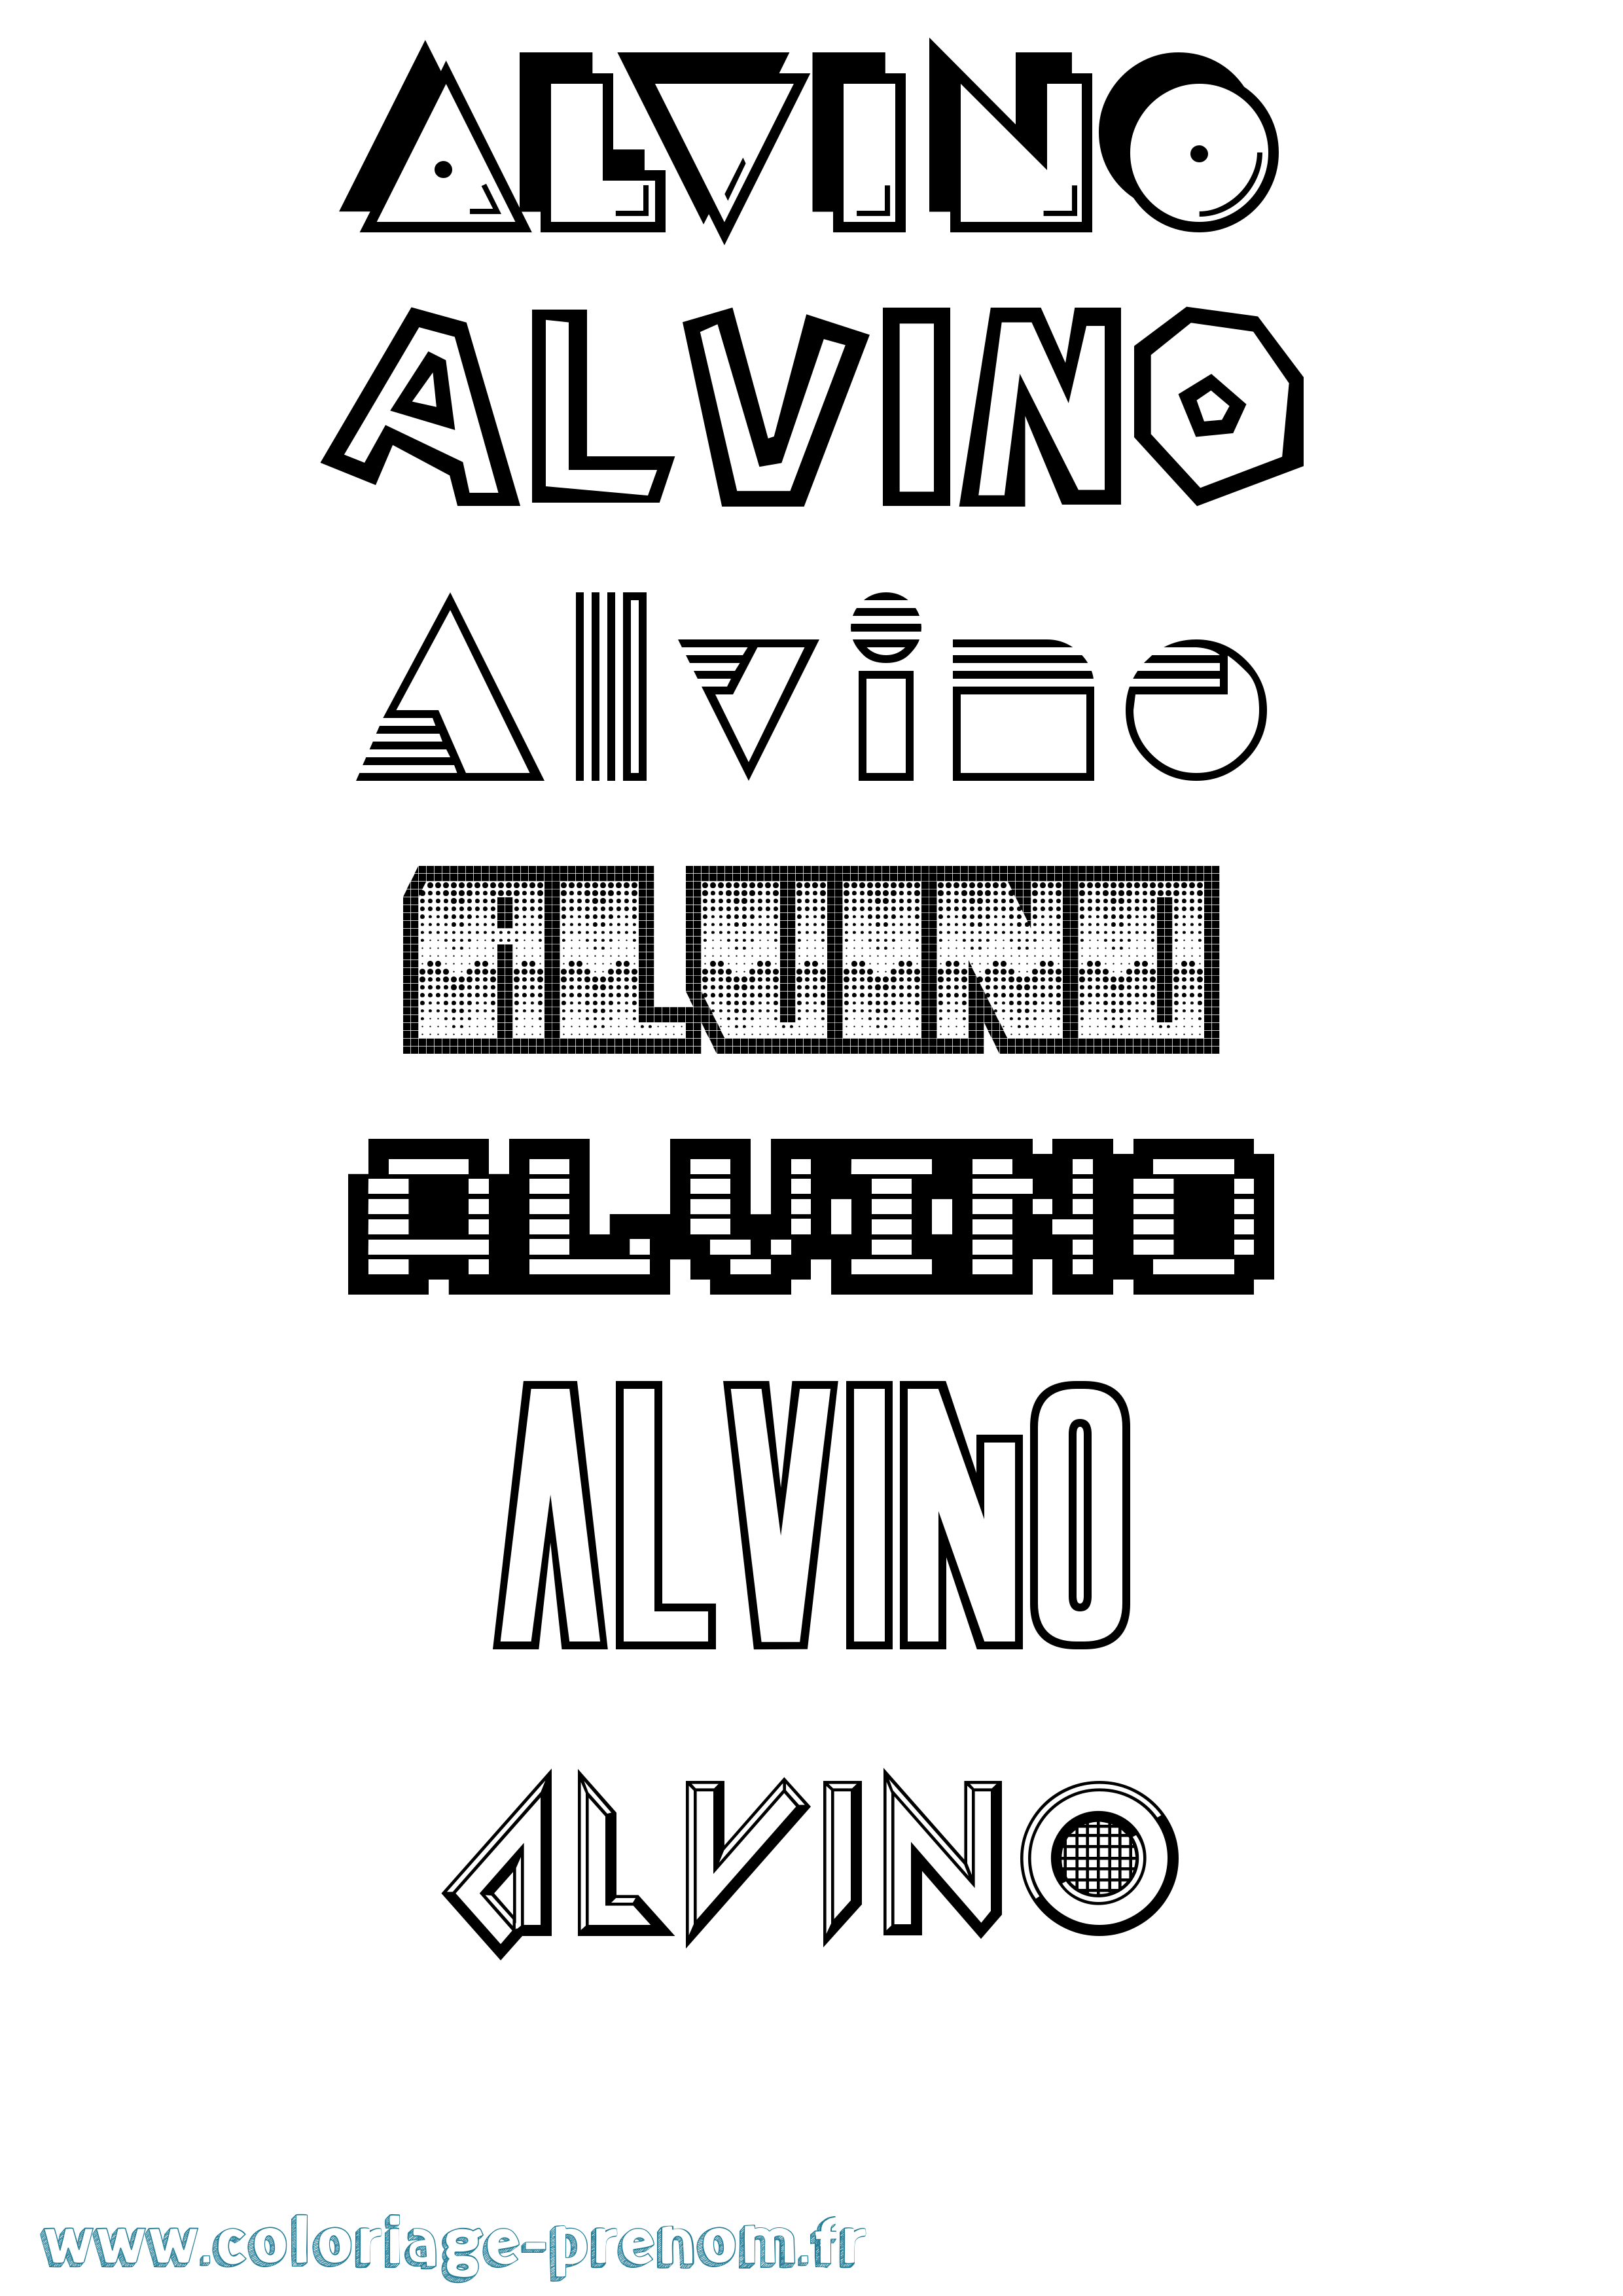 Coloriage prénom Alvino Jeux Vidéos